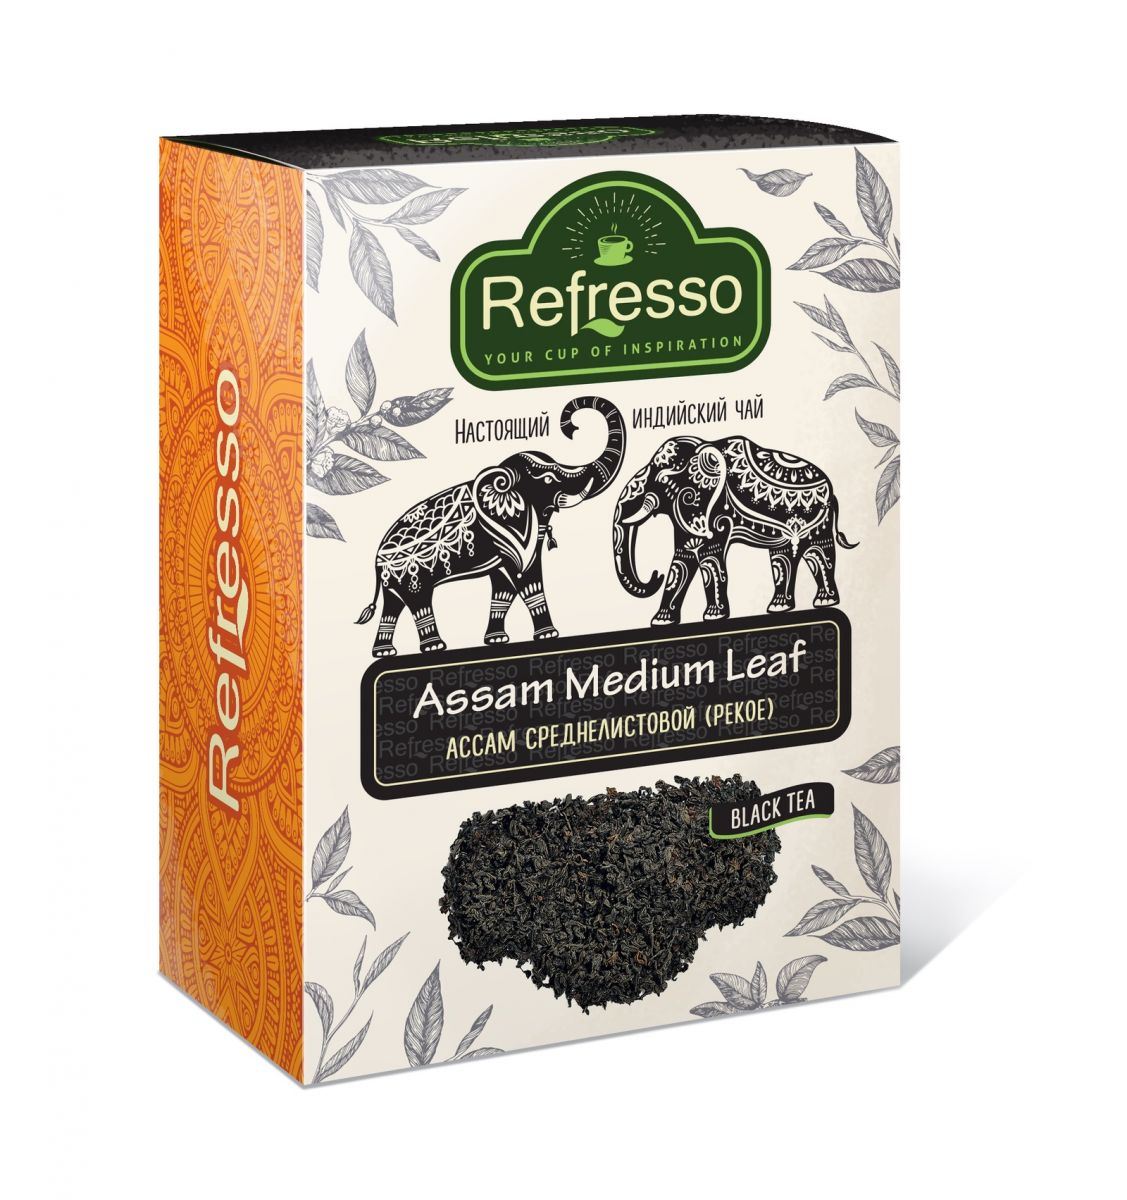 ASSAM Medium Leaf Black Tea, Refresso (АССАМ Среднелистовой (PEKOE) черный чай, Рефрессо), 250 г.